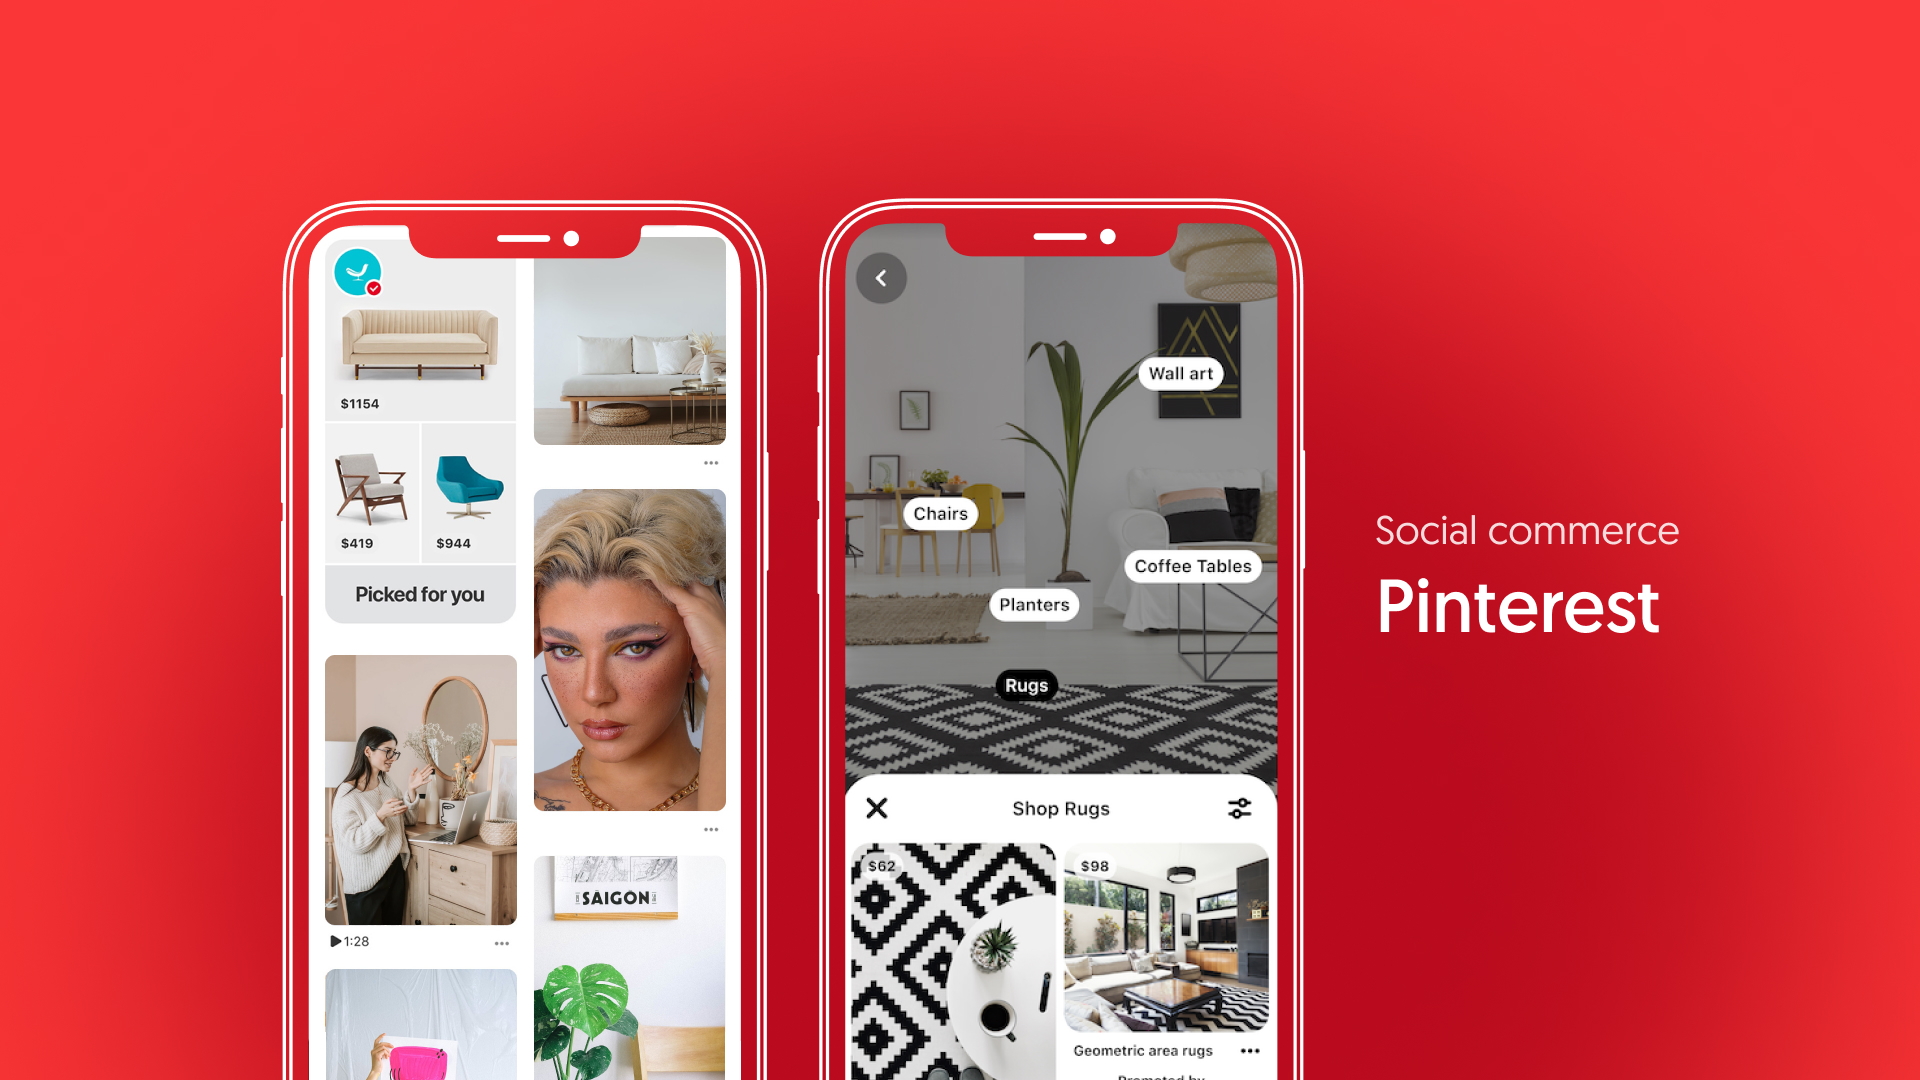 Social commerce – Pinterest